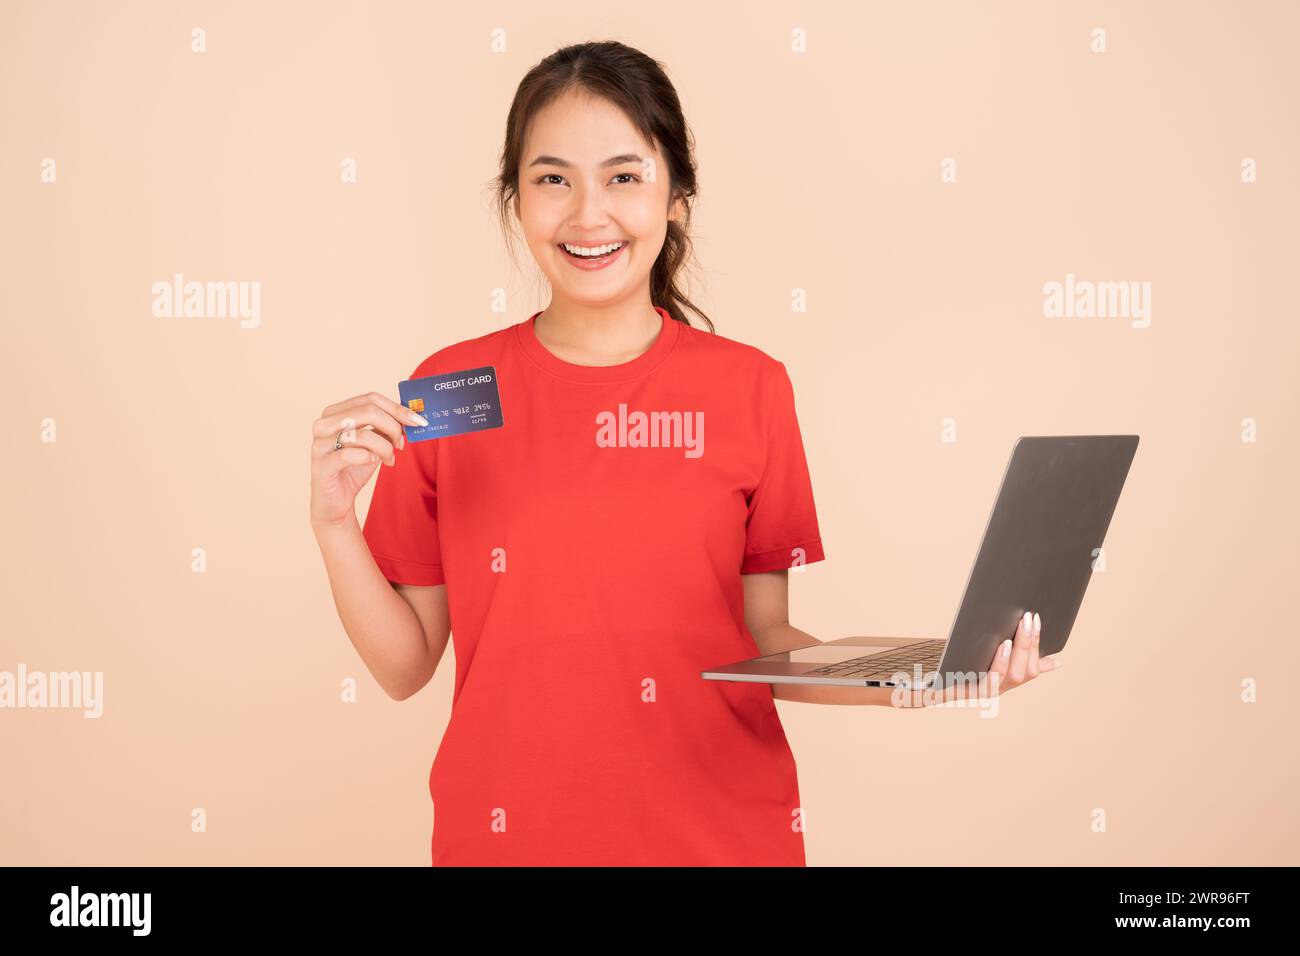 Una giovane donna che indossa una camicia rossa possiede una carta di credito e utilizza un computer portatile per pagare online, acquisti online, e-commerce, banche, Internet café utilizzando il credito Foto Stock